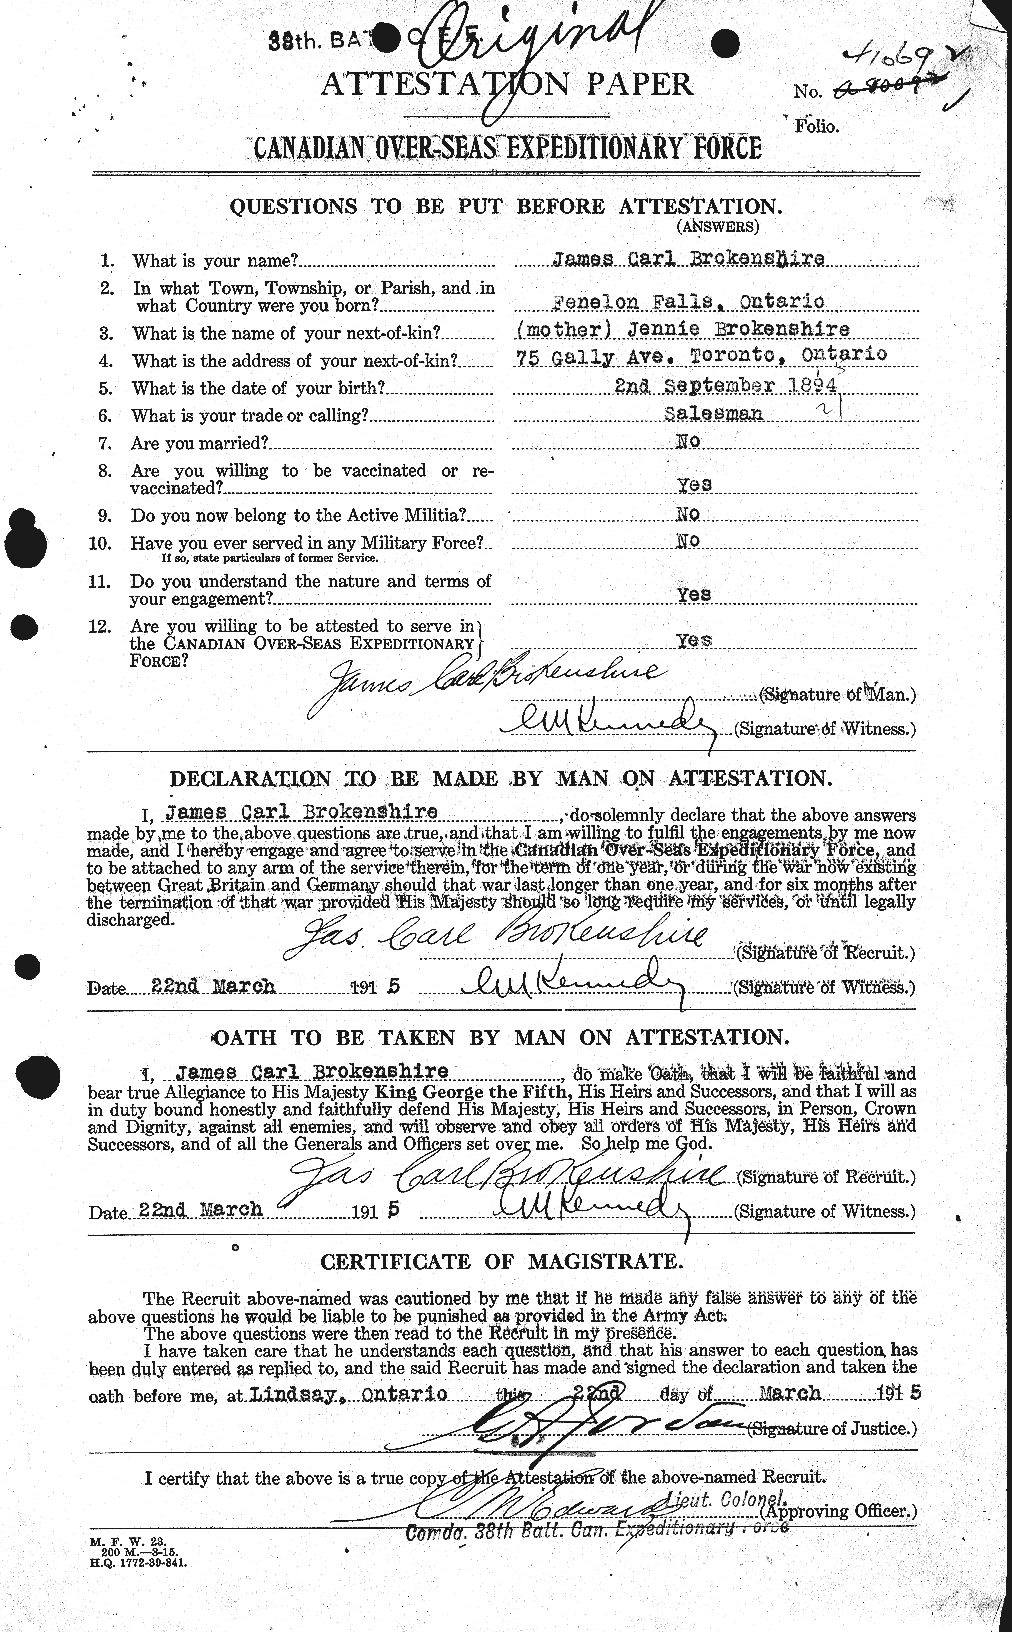 Dossiers du Personnel de la Première Guerre mondiale - CEC 262102a